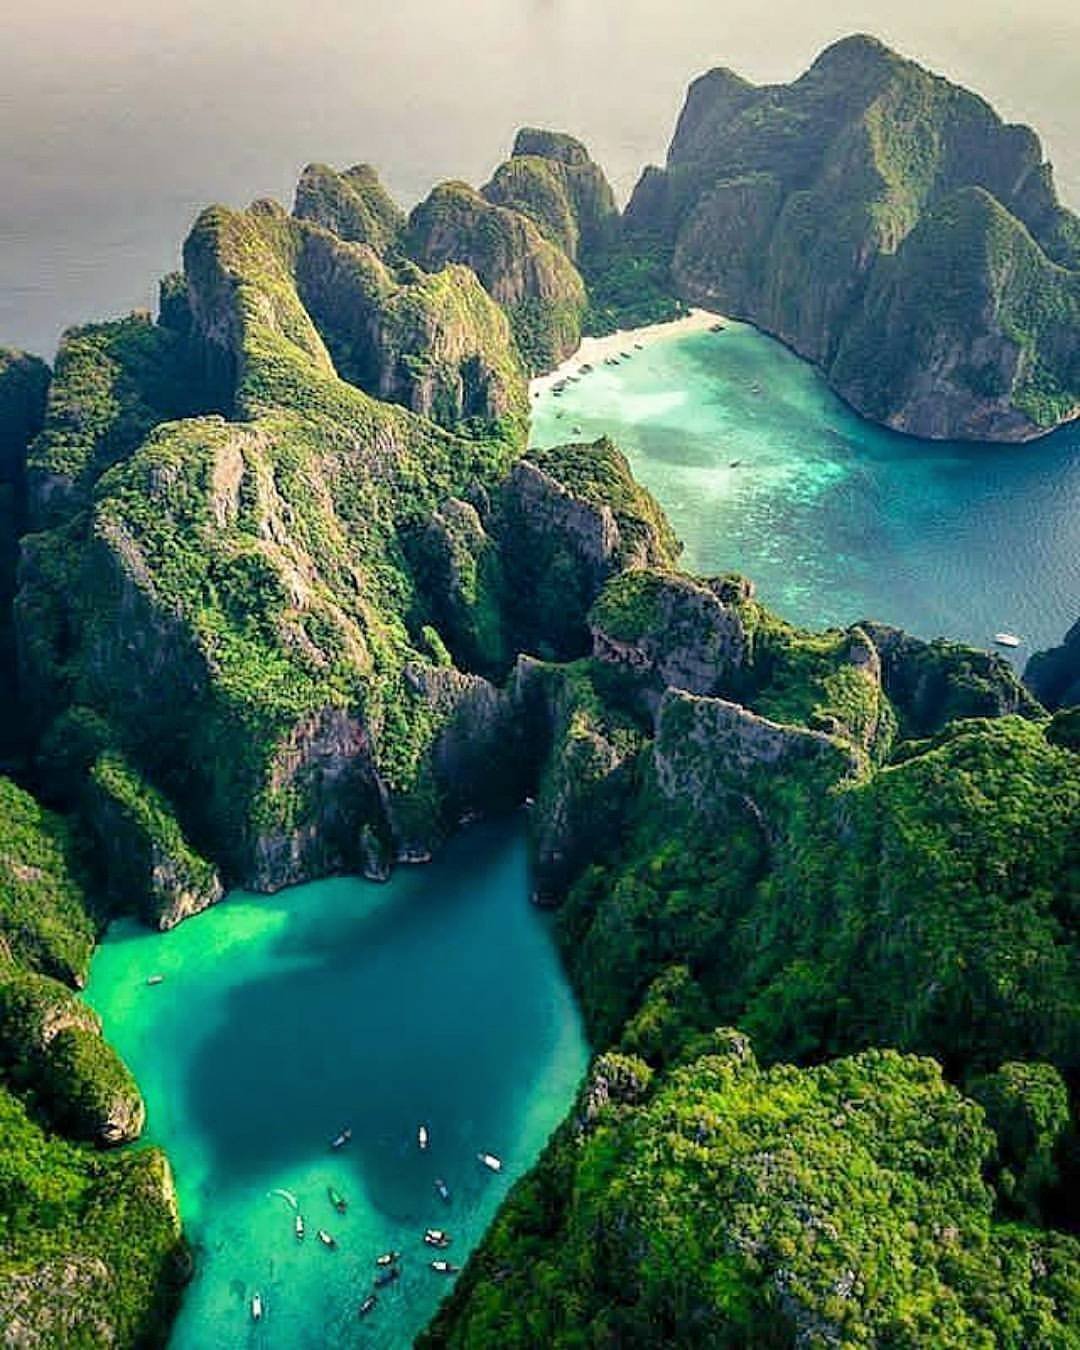 Какой остров таиланда выбрать для отдыха — карта с островами